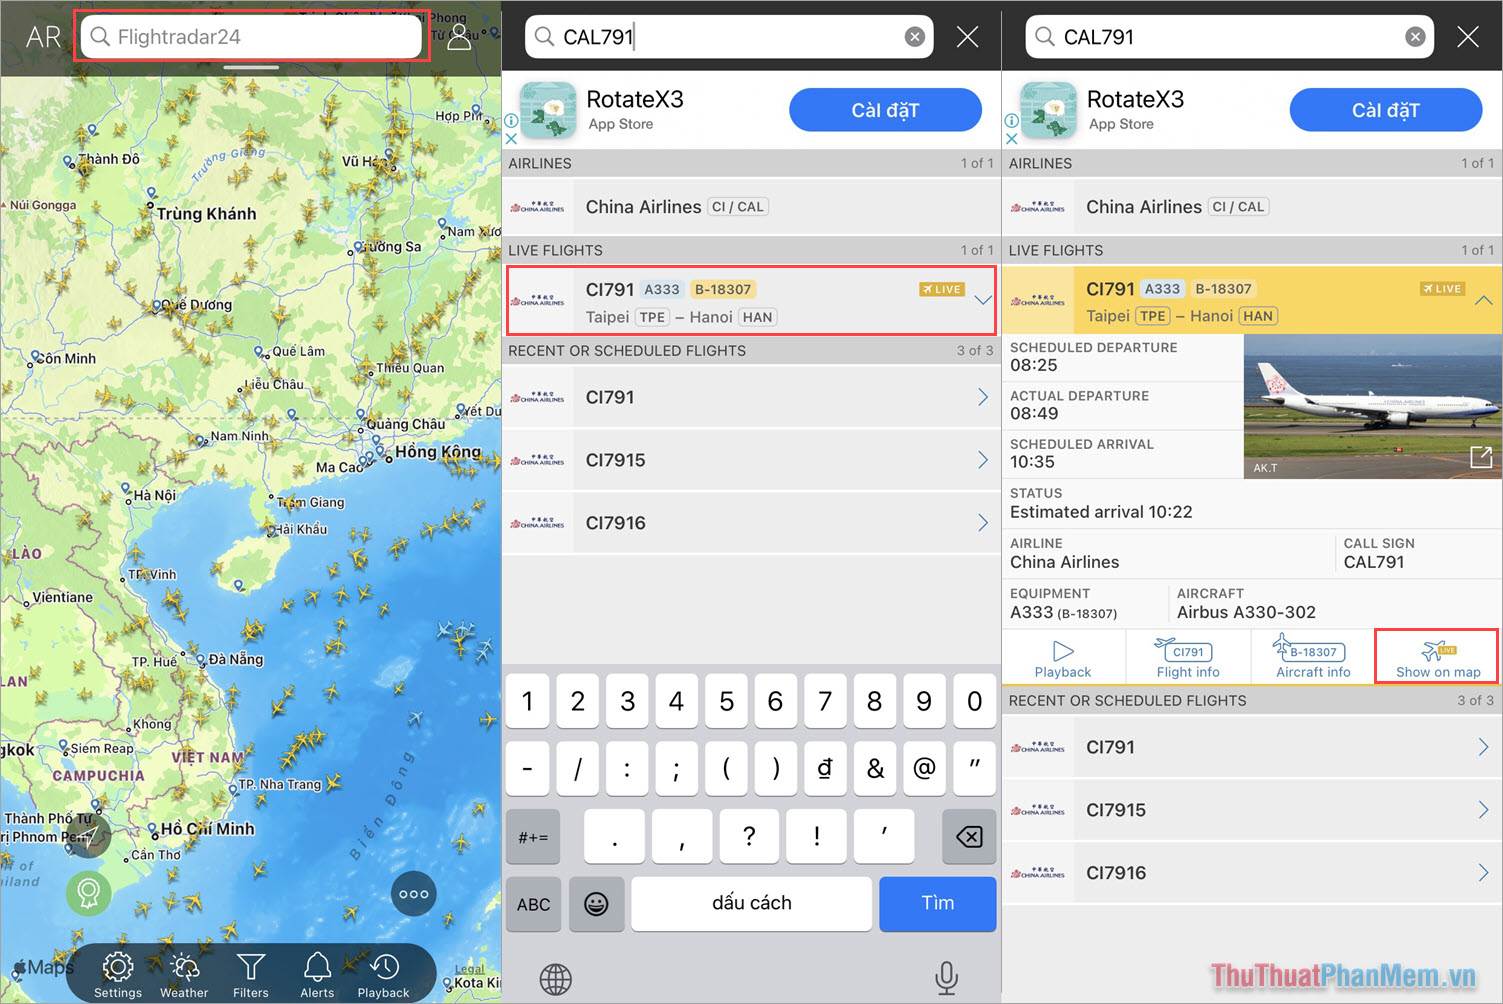 Mở ứng dụng Flightradar24 và nhập mã chuyến bay